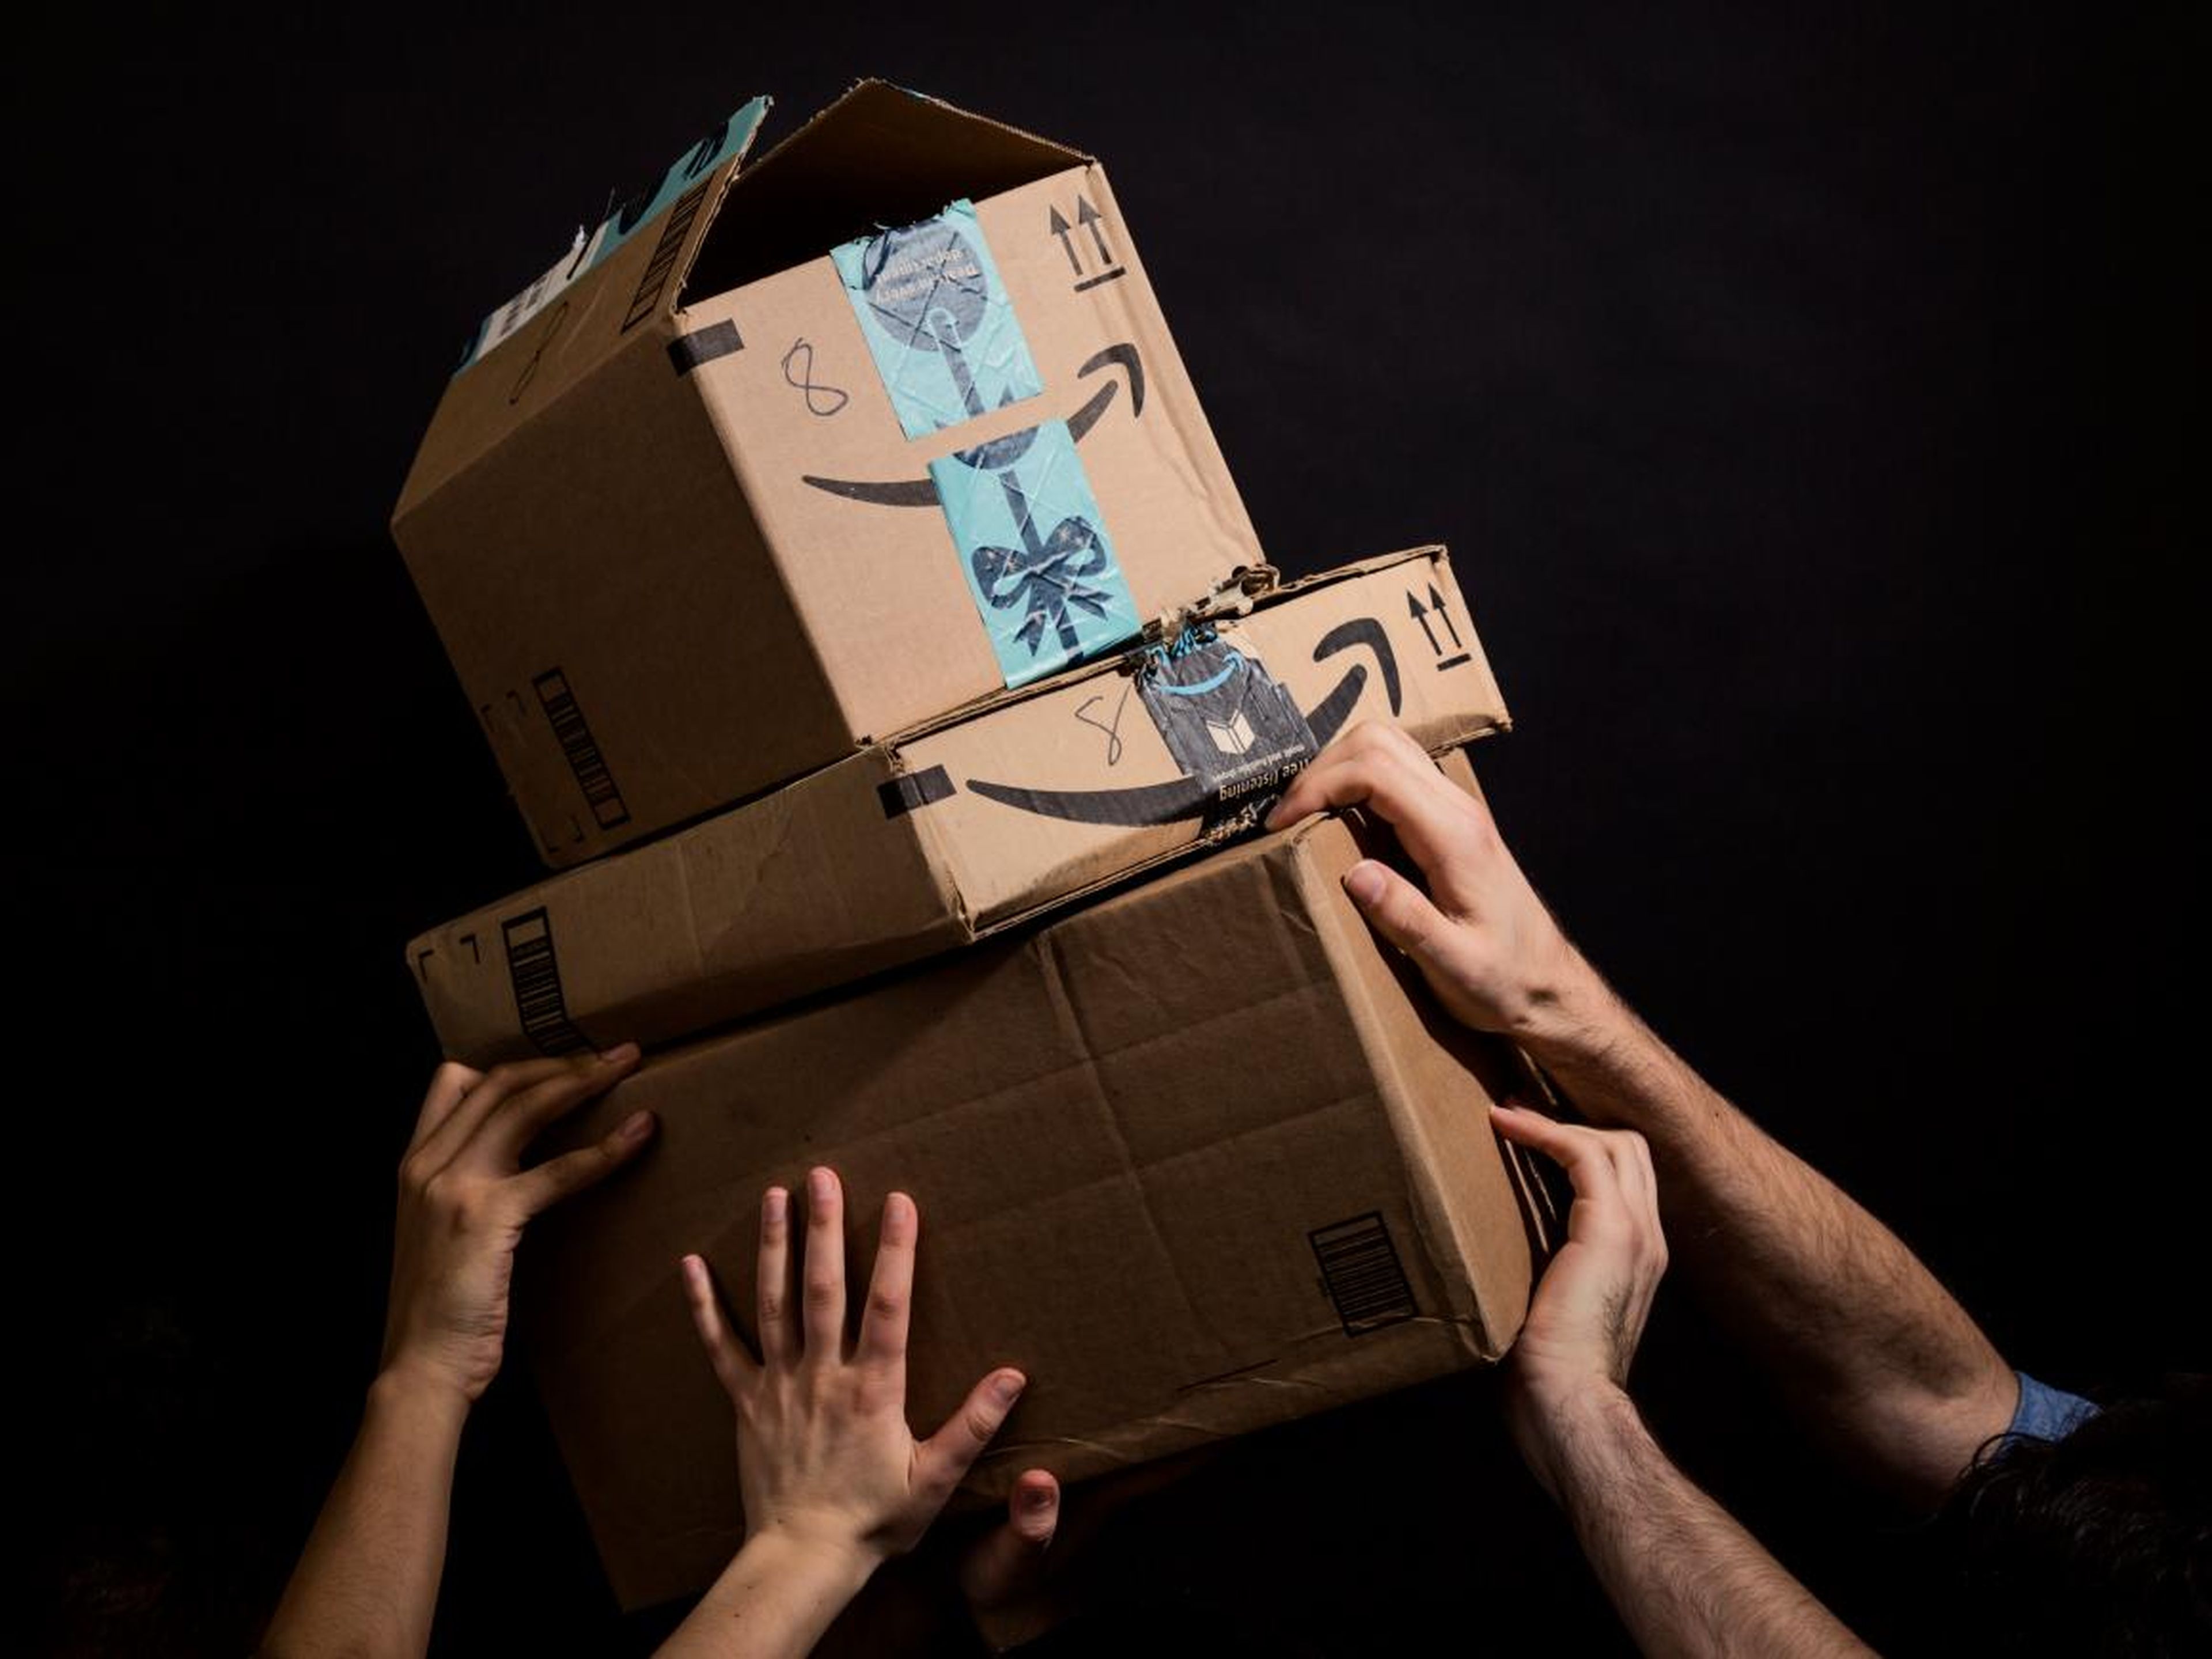 Business Insider habla con trabajadores de Amazon sobre cómo es trabajar durante el periodo de mayor demanda del año.